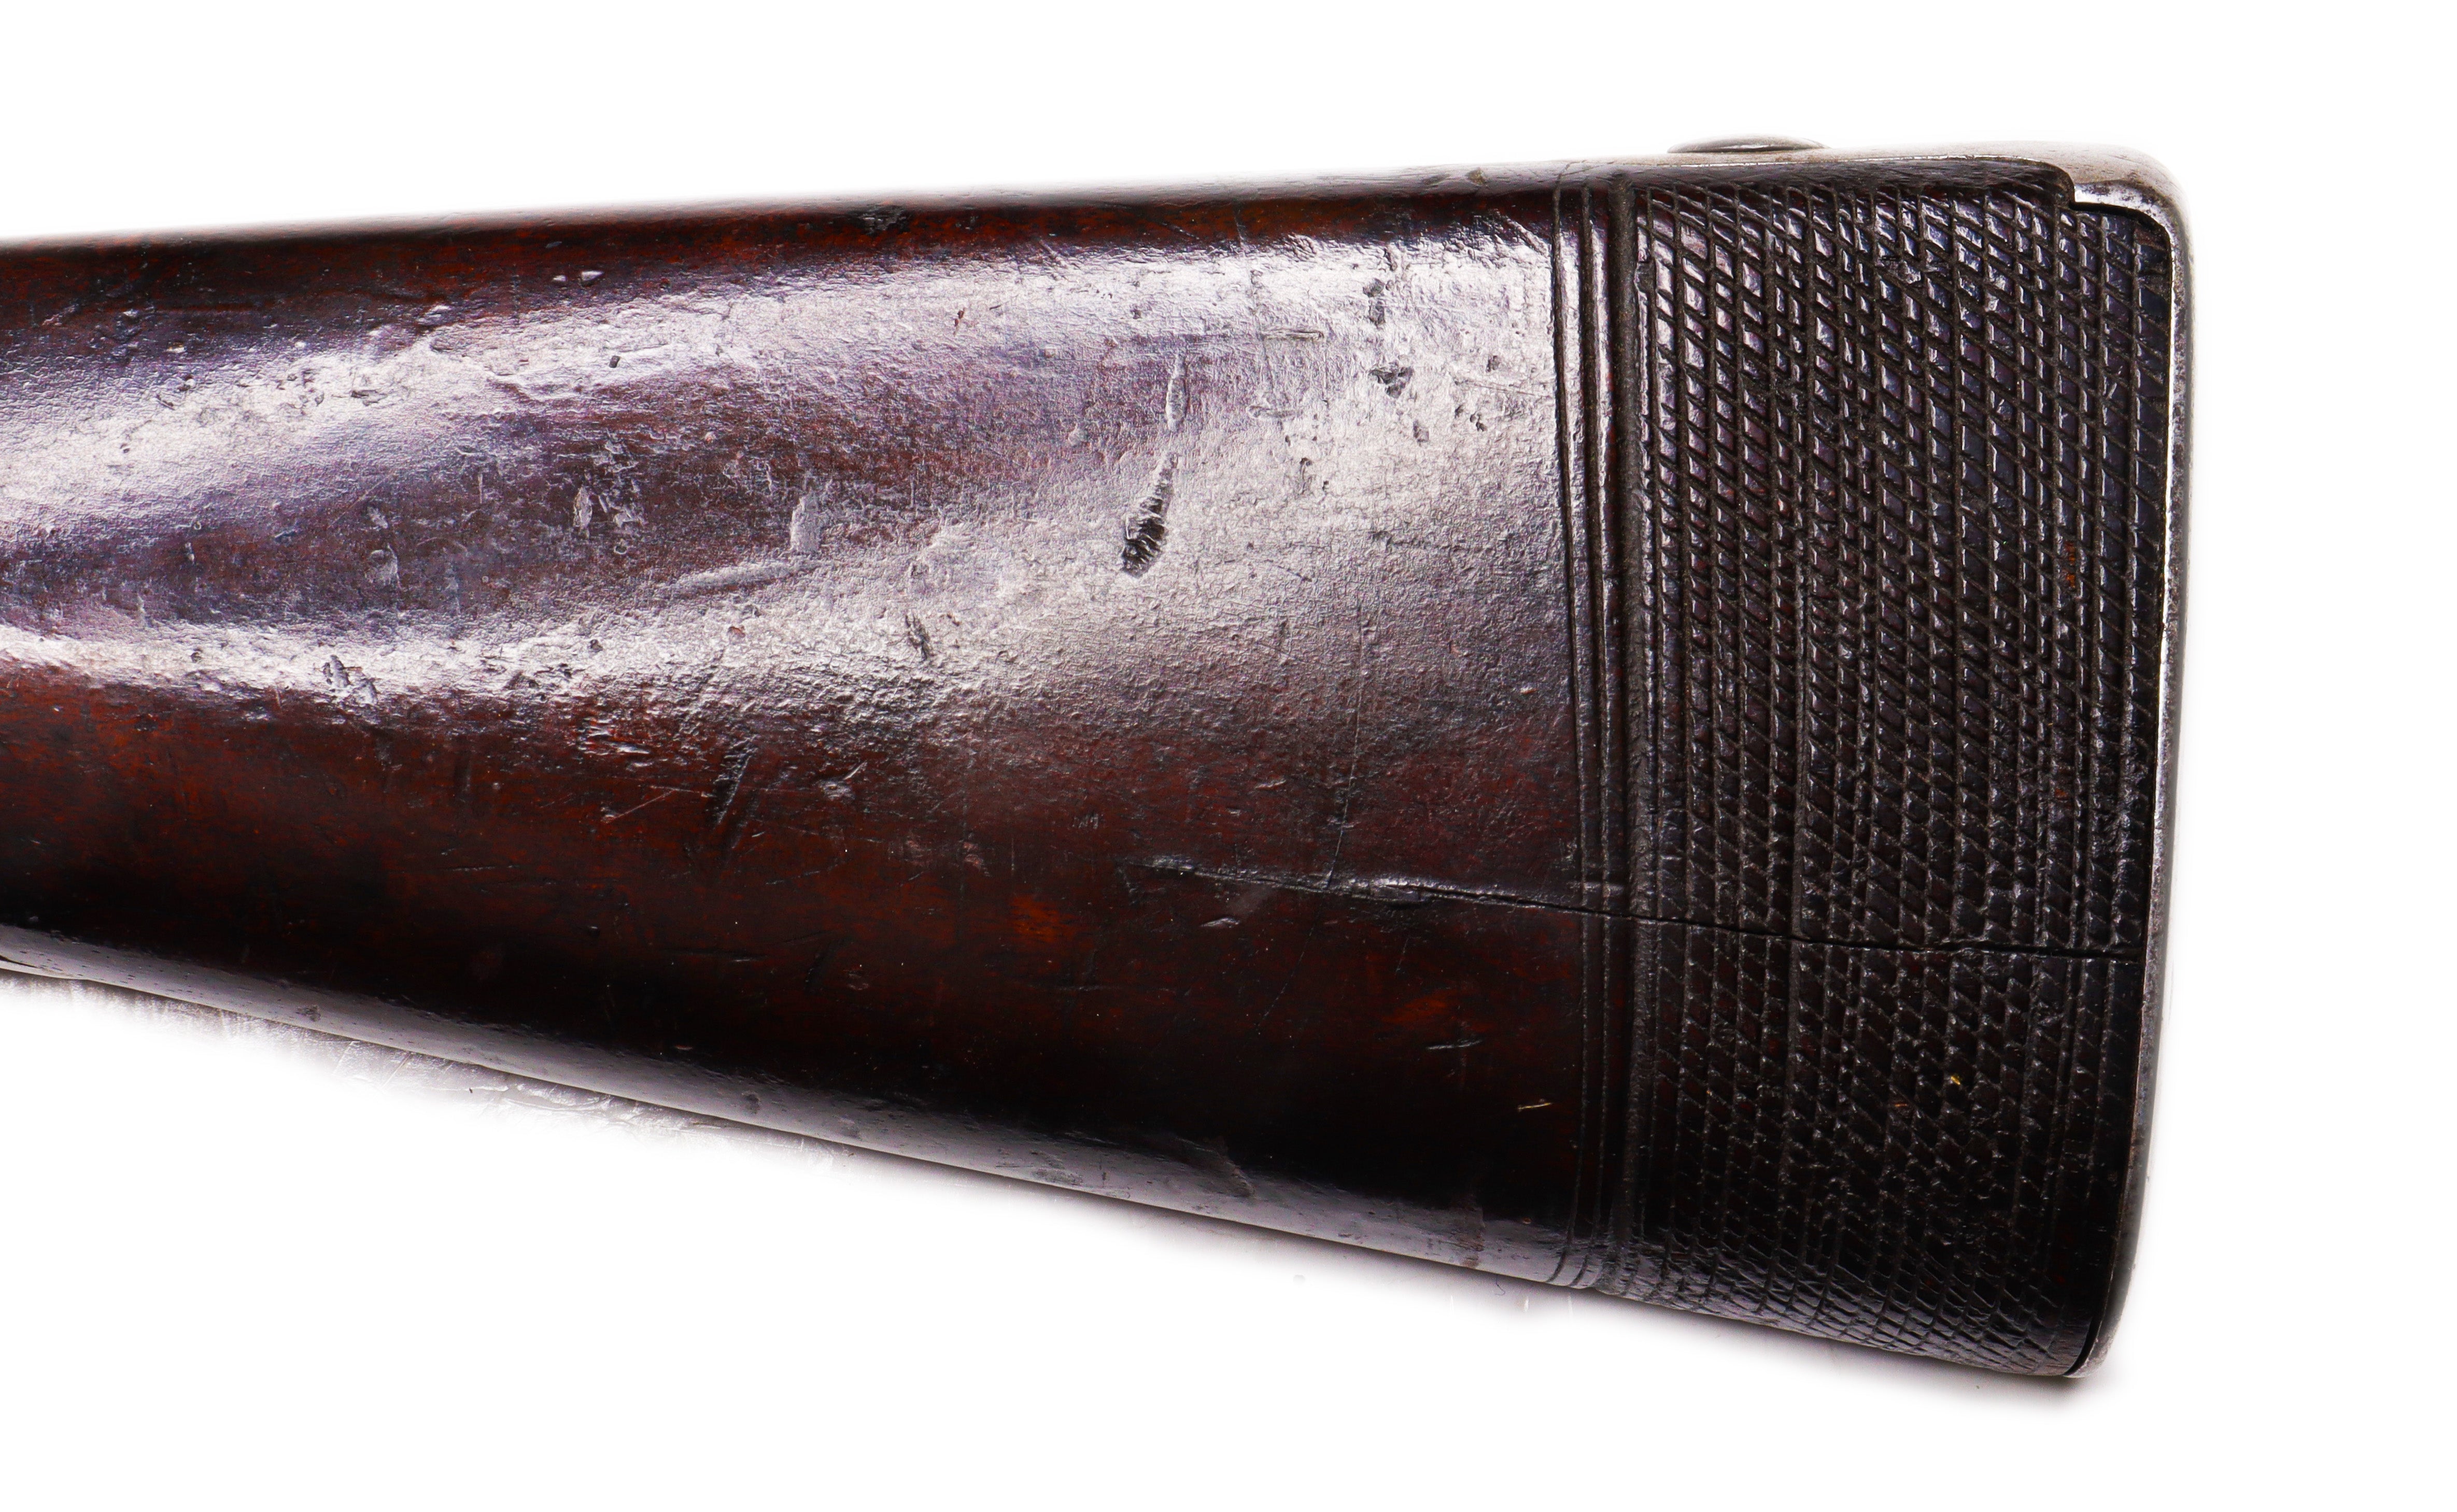 U.S. Military Flintlock Musket Model 1816 by Nippes